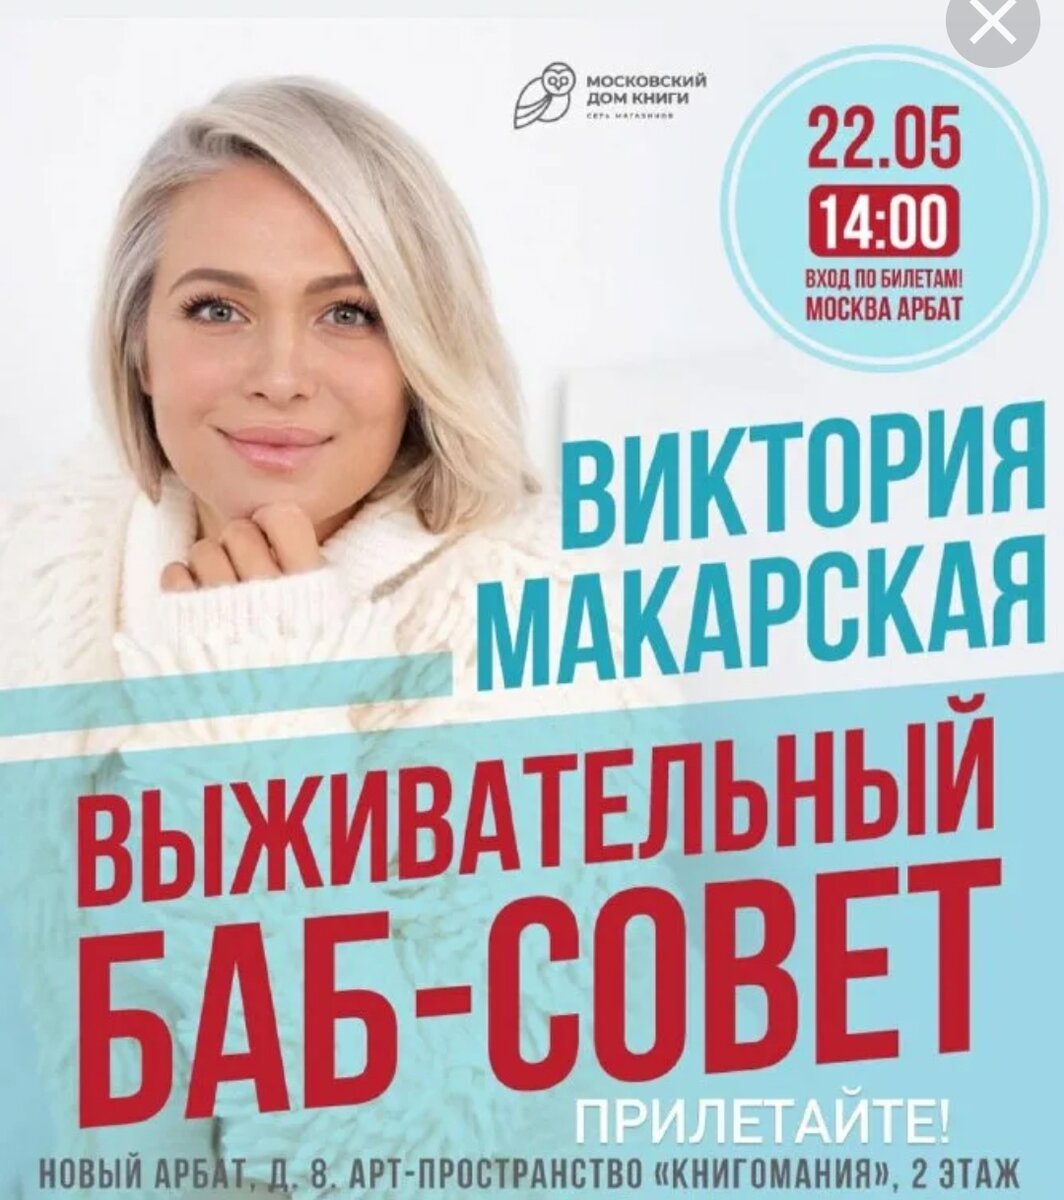 Посмотрел недавнее видео певицы и православного блогера Виктории Макарской — вместе с мужем Антоном Макарским она выступает с концертами по городам России, а также ведёт этакий женский клуб "Бабсовет"-2